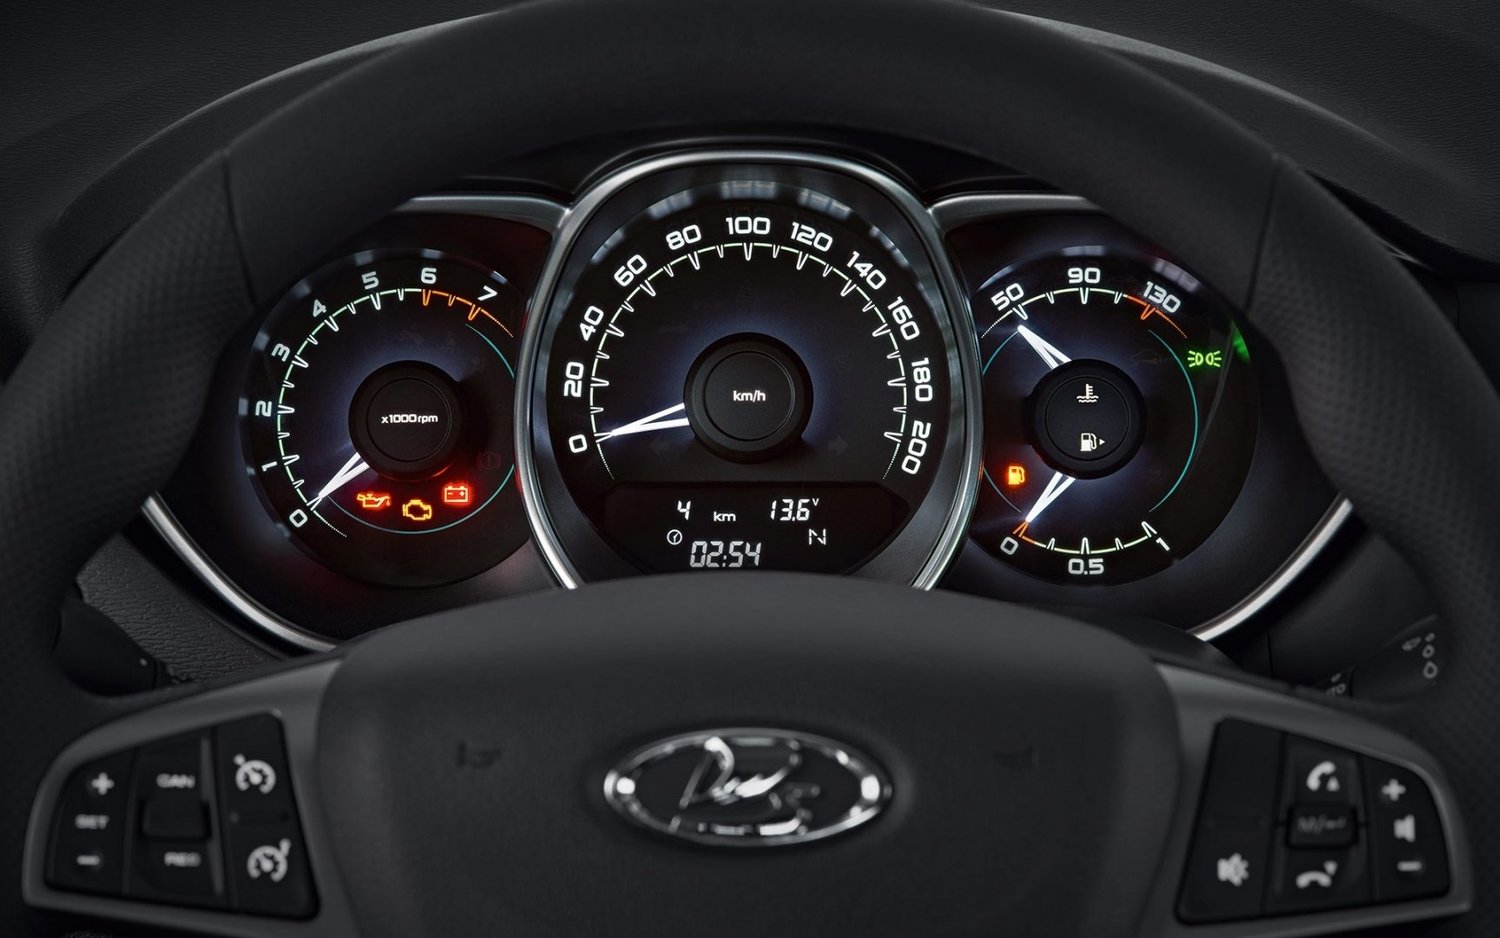 седан ВАЗ (Lada) Vesta 2015 - 2016г выпуска модификация classic 1.6 MT (106 л.с.)